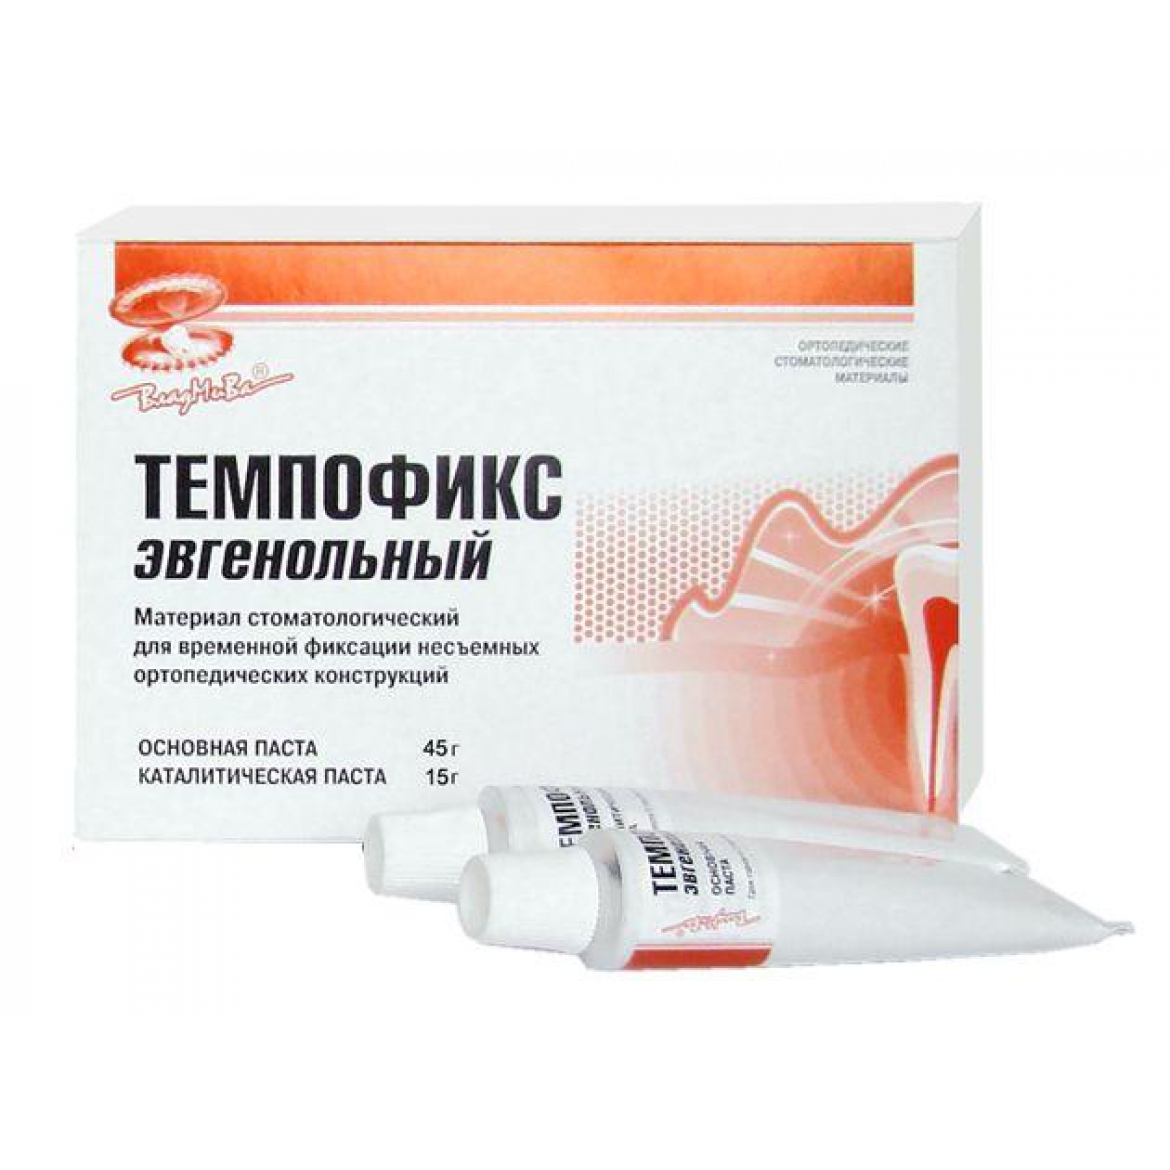 Темпофикс (эвгенольный)/пастабазовая 45г+ паста каталитическая 15г